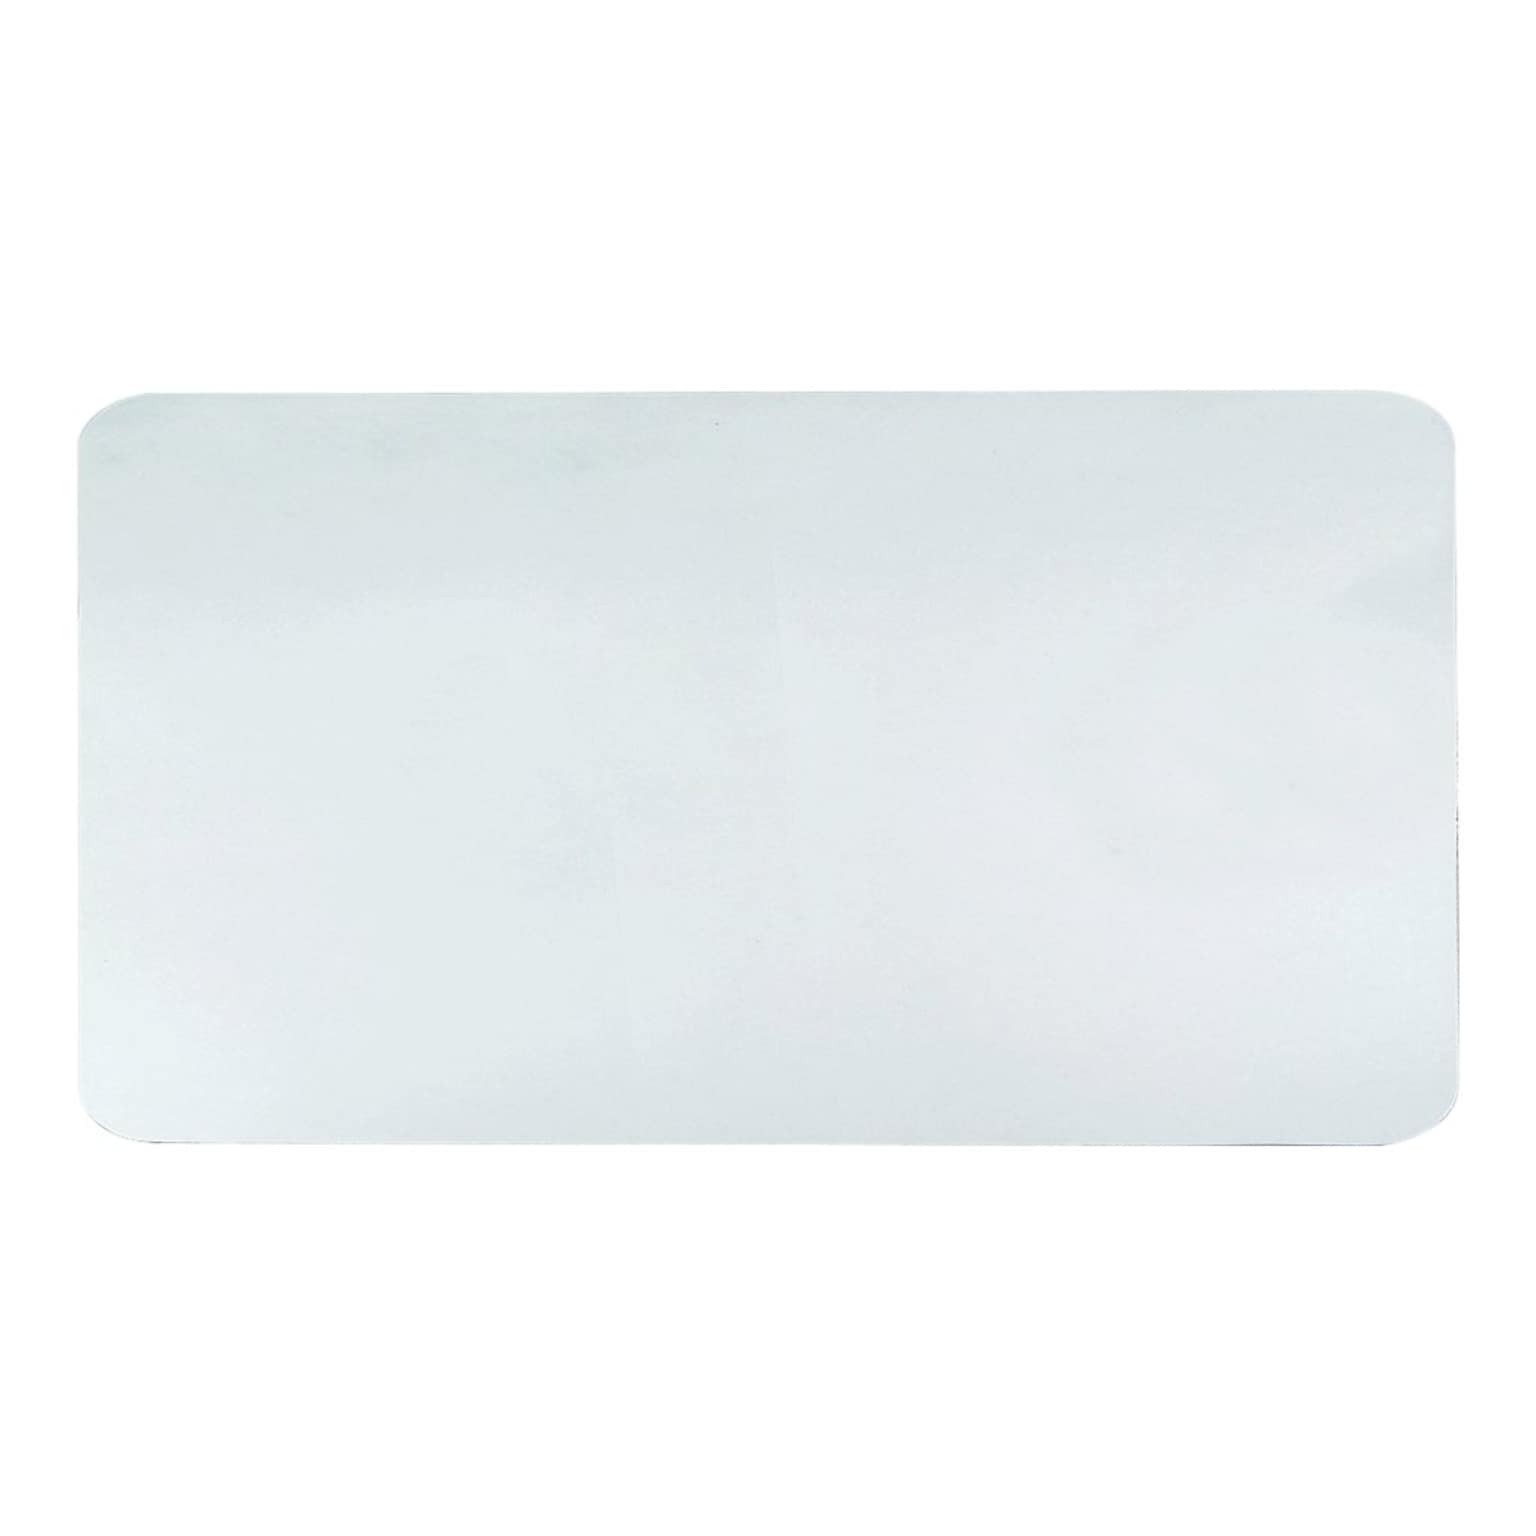 Artistic Krystal View Anti-Slip Plastic Desk Pad, 20 x 36, Clear (60-6-0M)